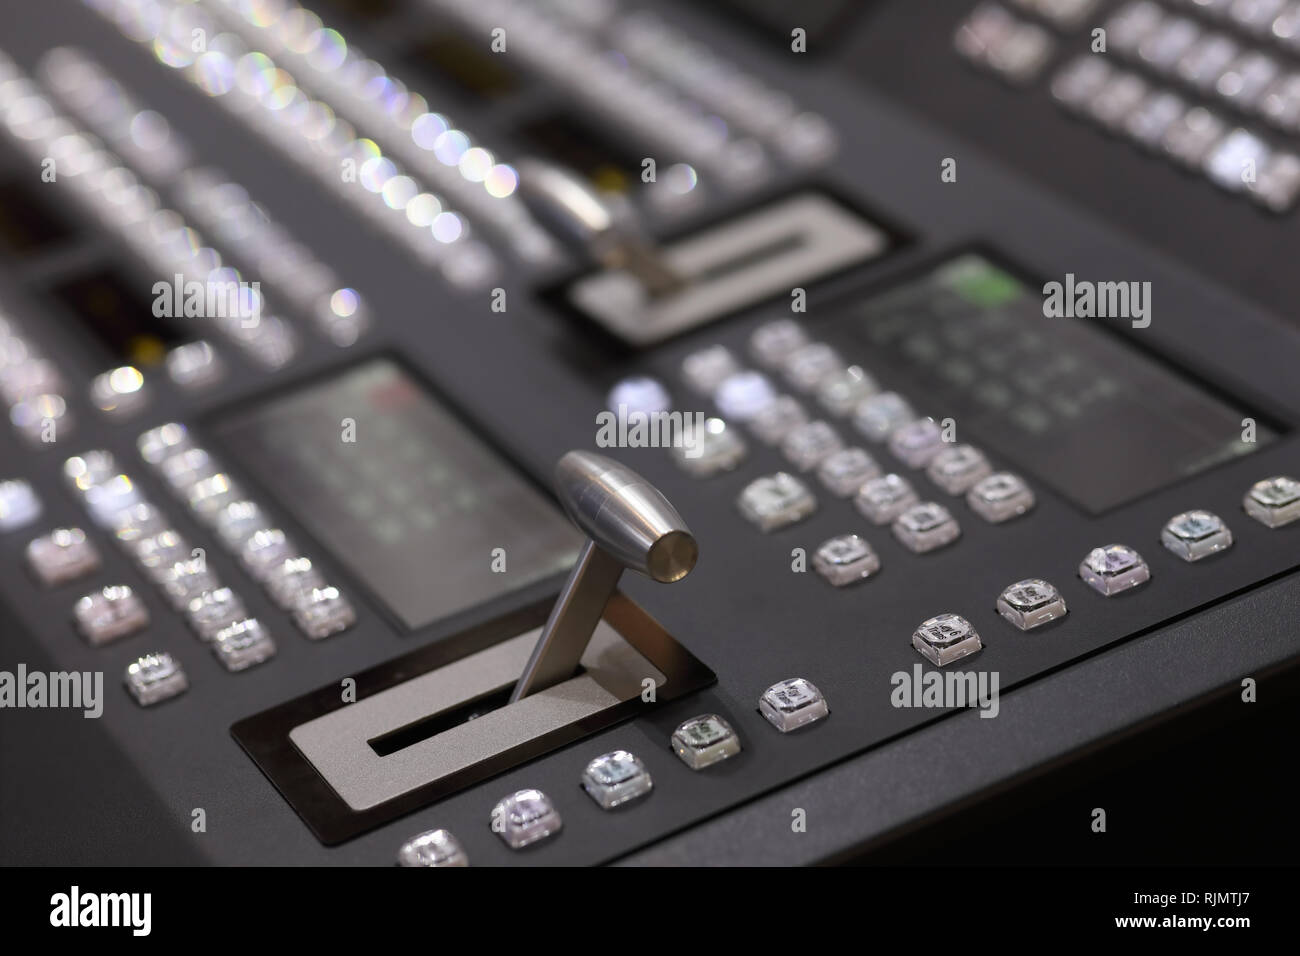 Detailansicht des digitalen Video Switcher Control Panel. Selektive konzentrieren. Stockfoto